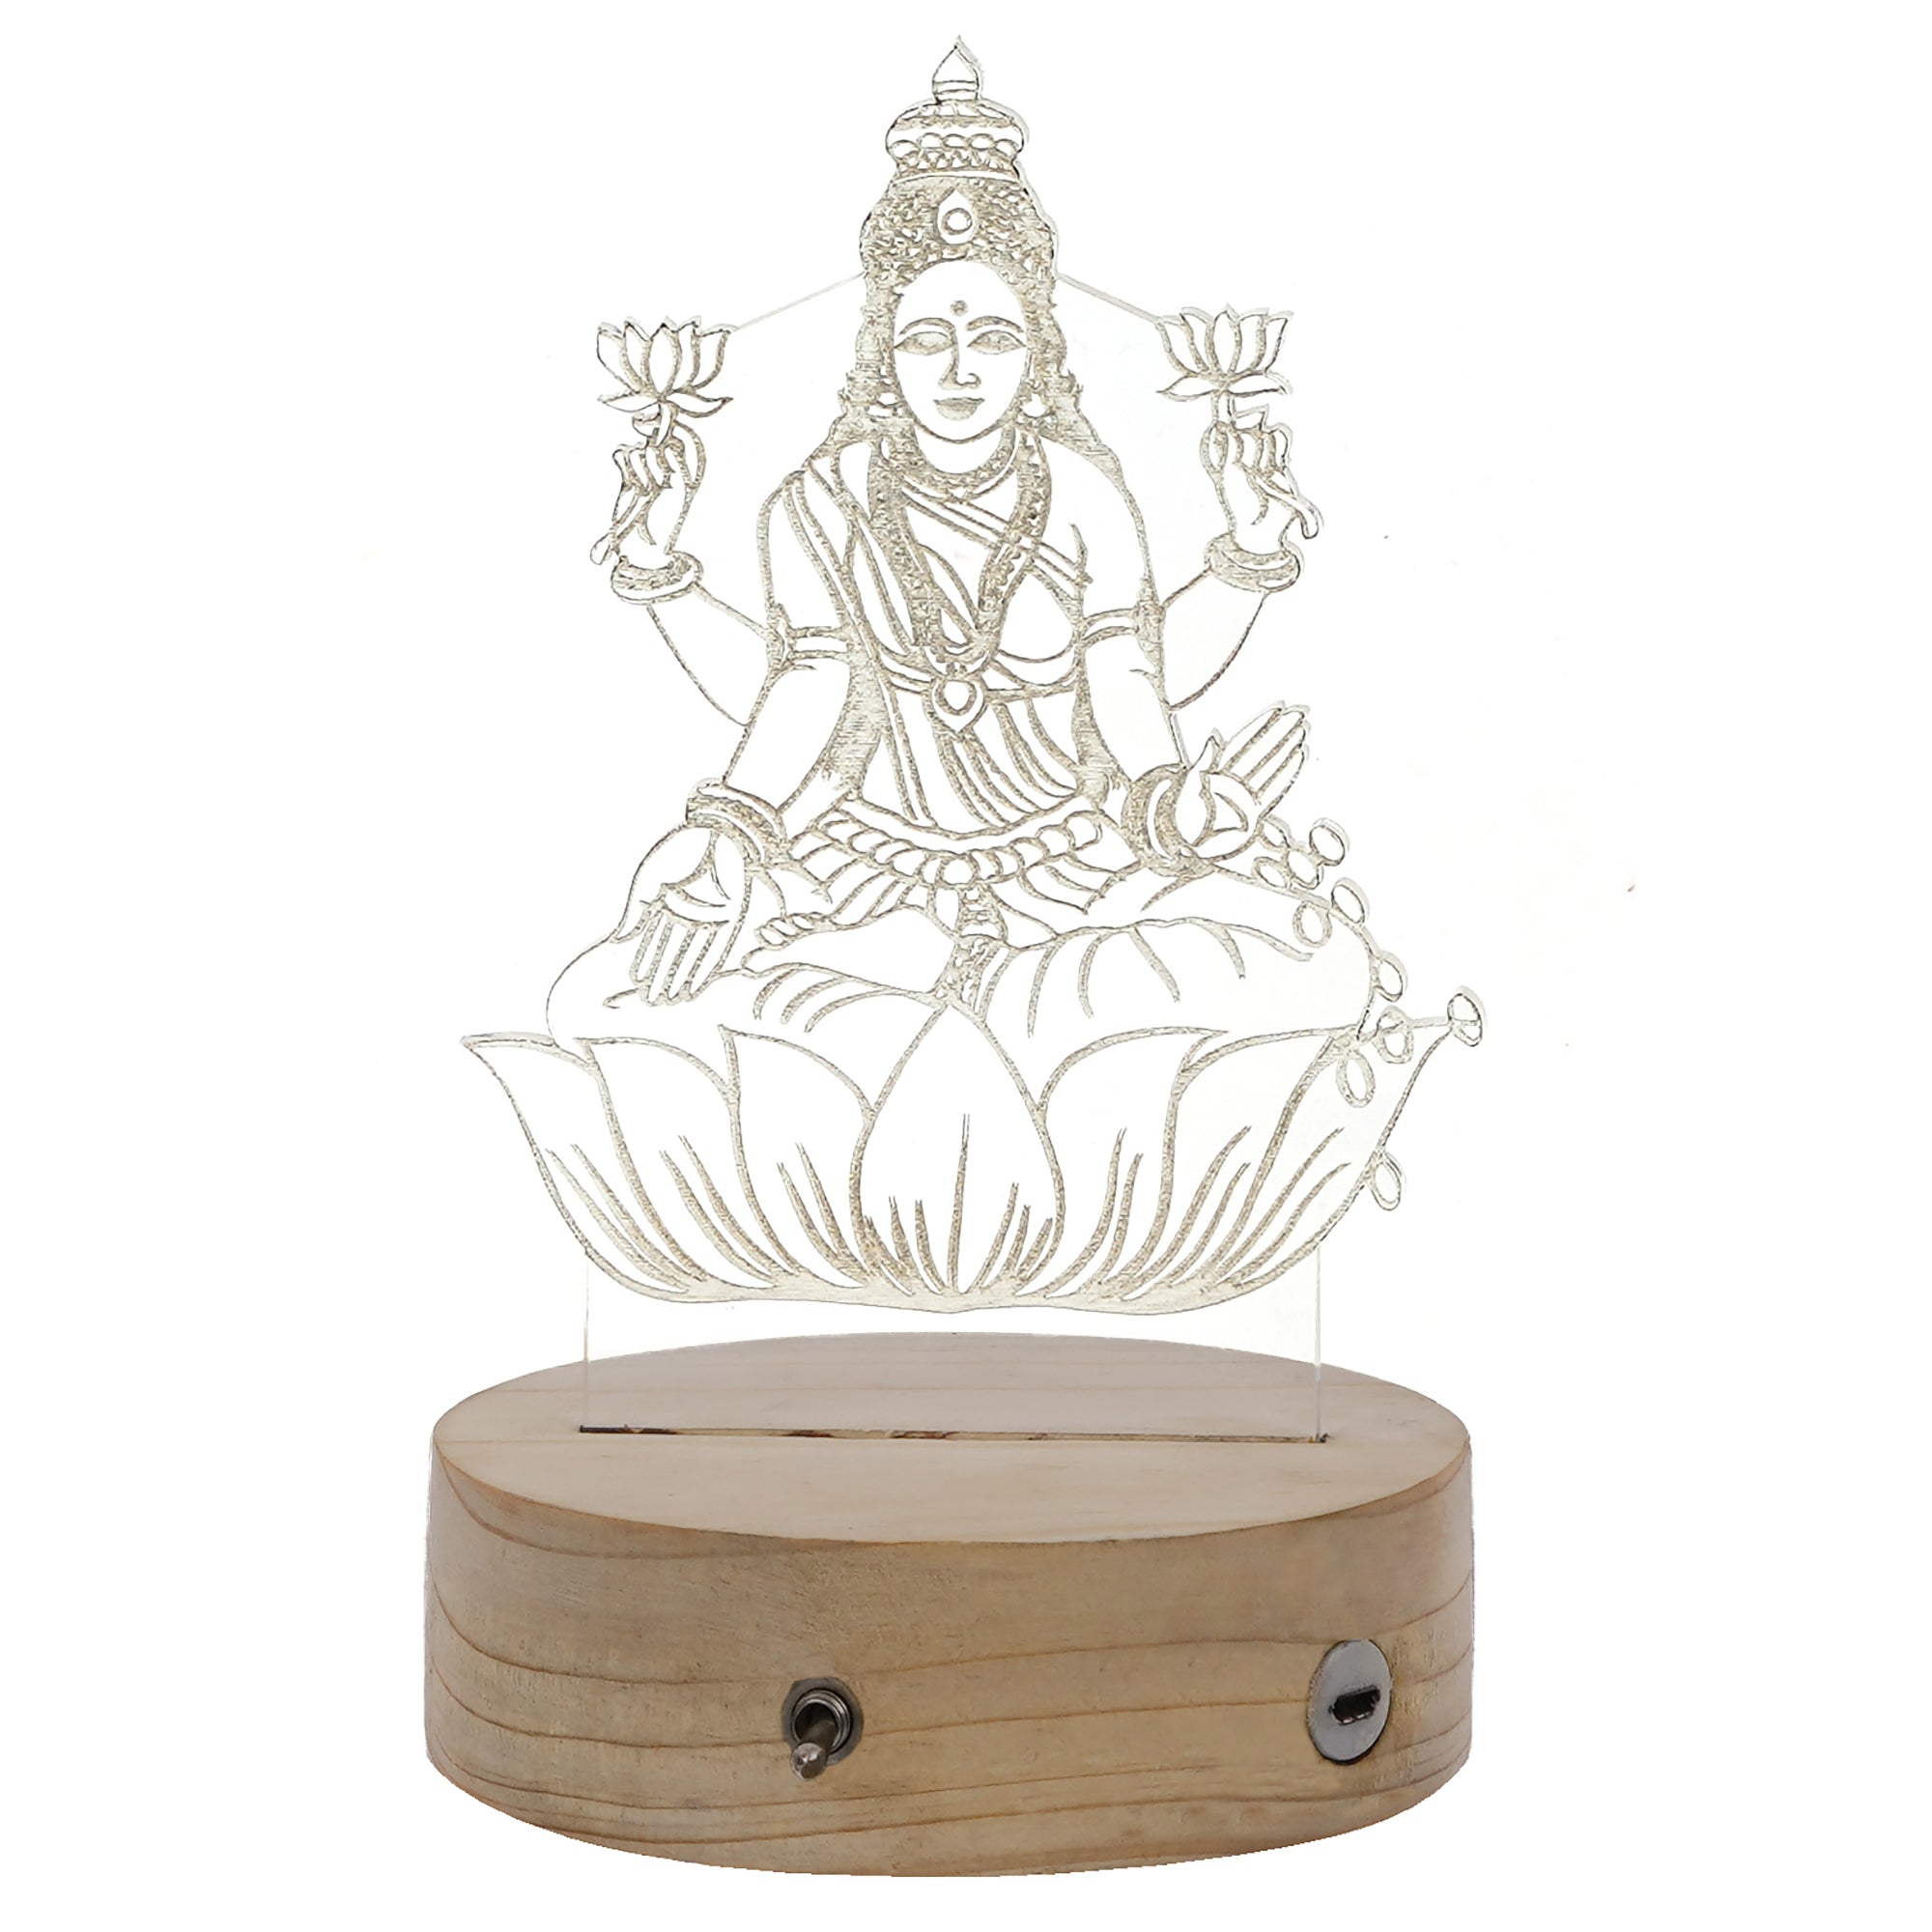 Goddess Laxmi Design Carved on Acrylic & Wood Base Night Lamp 6